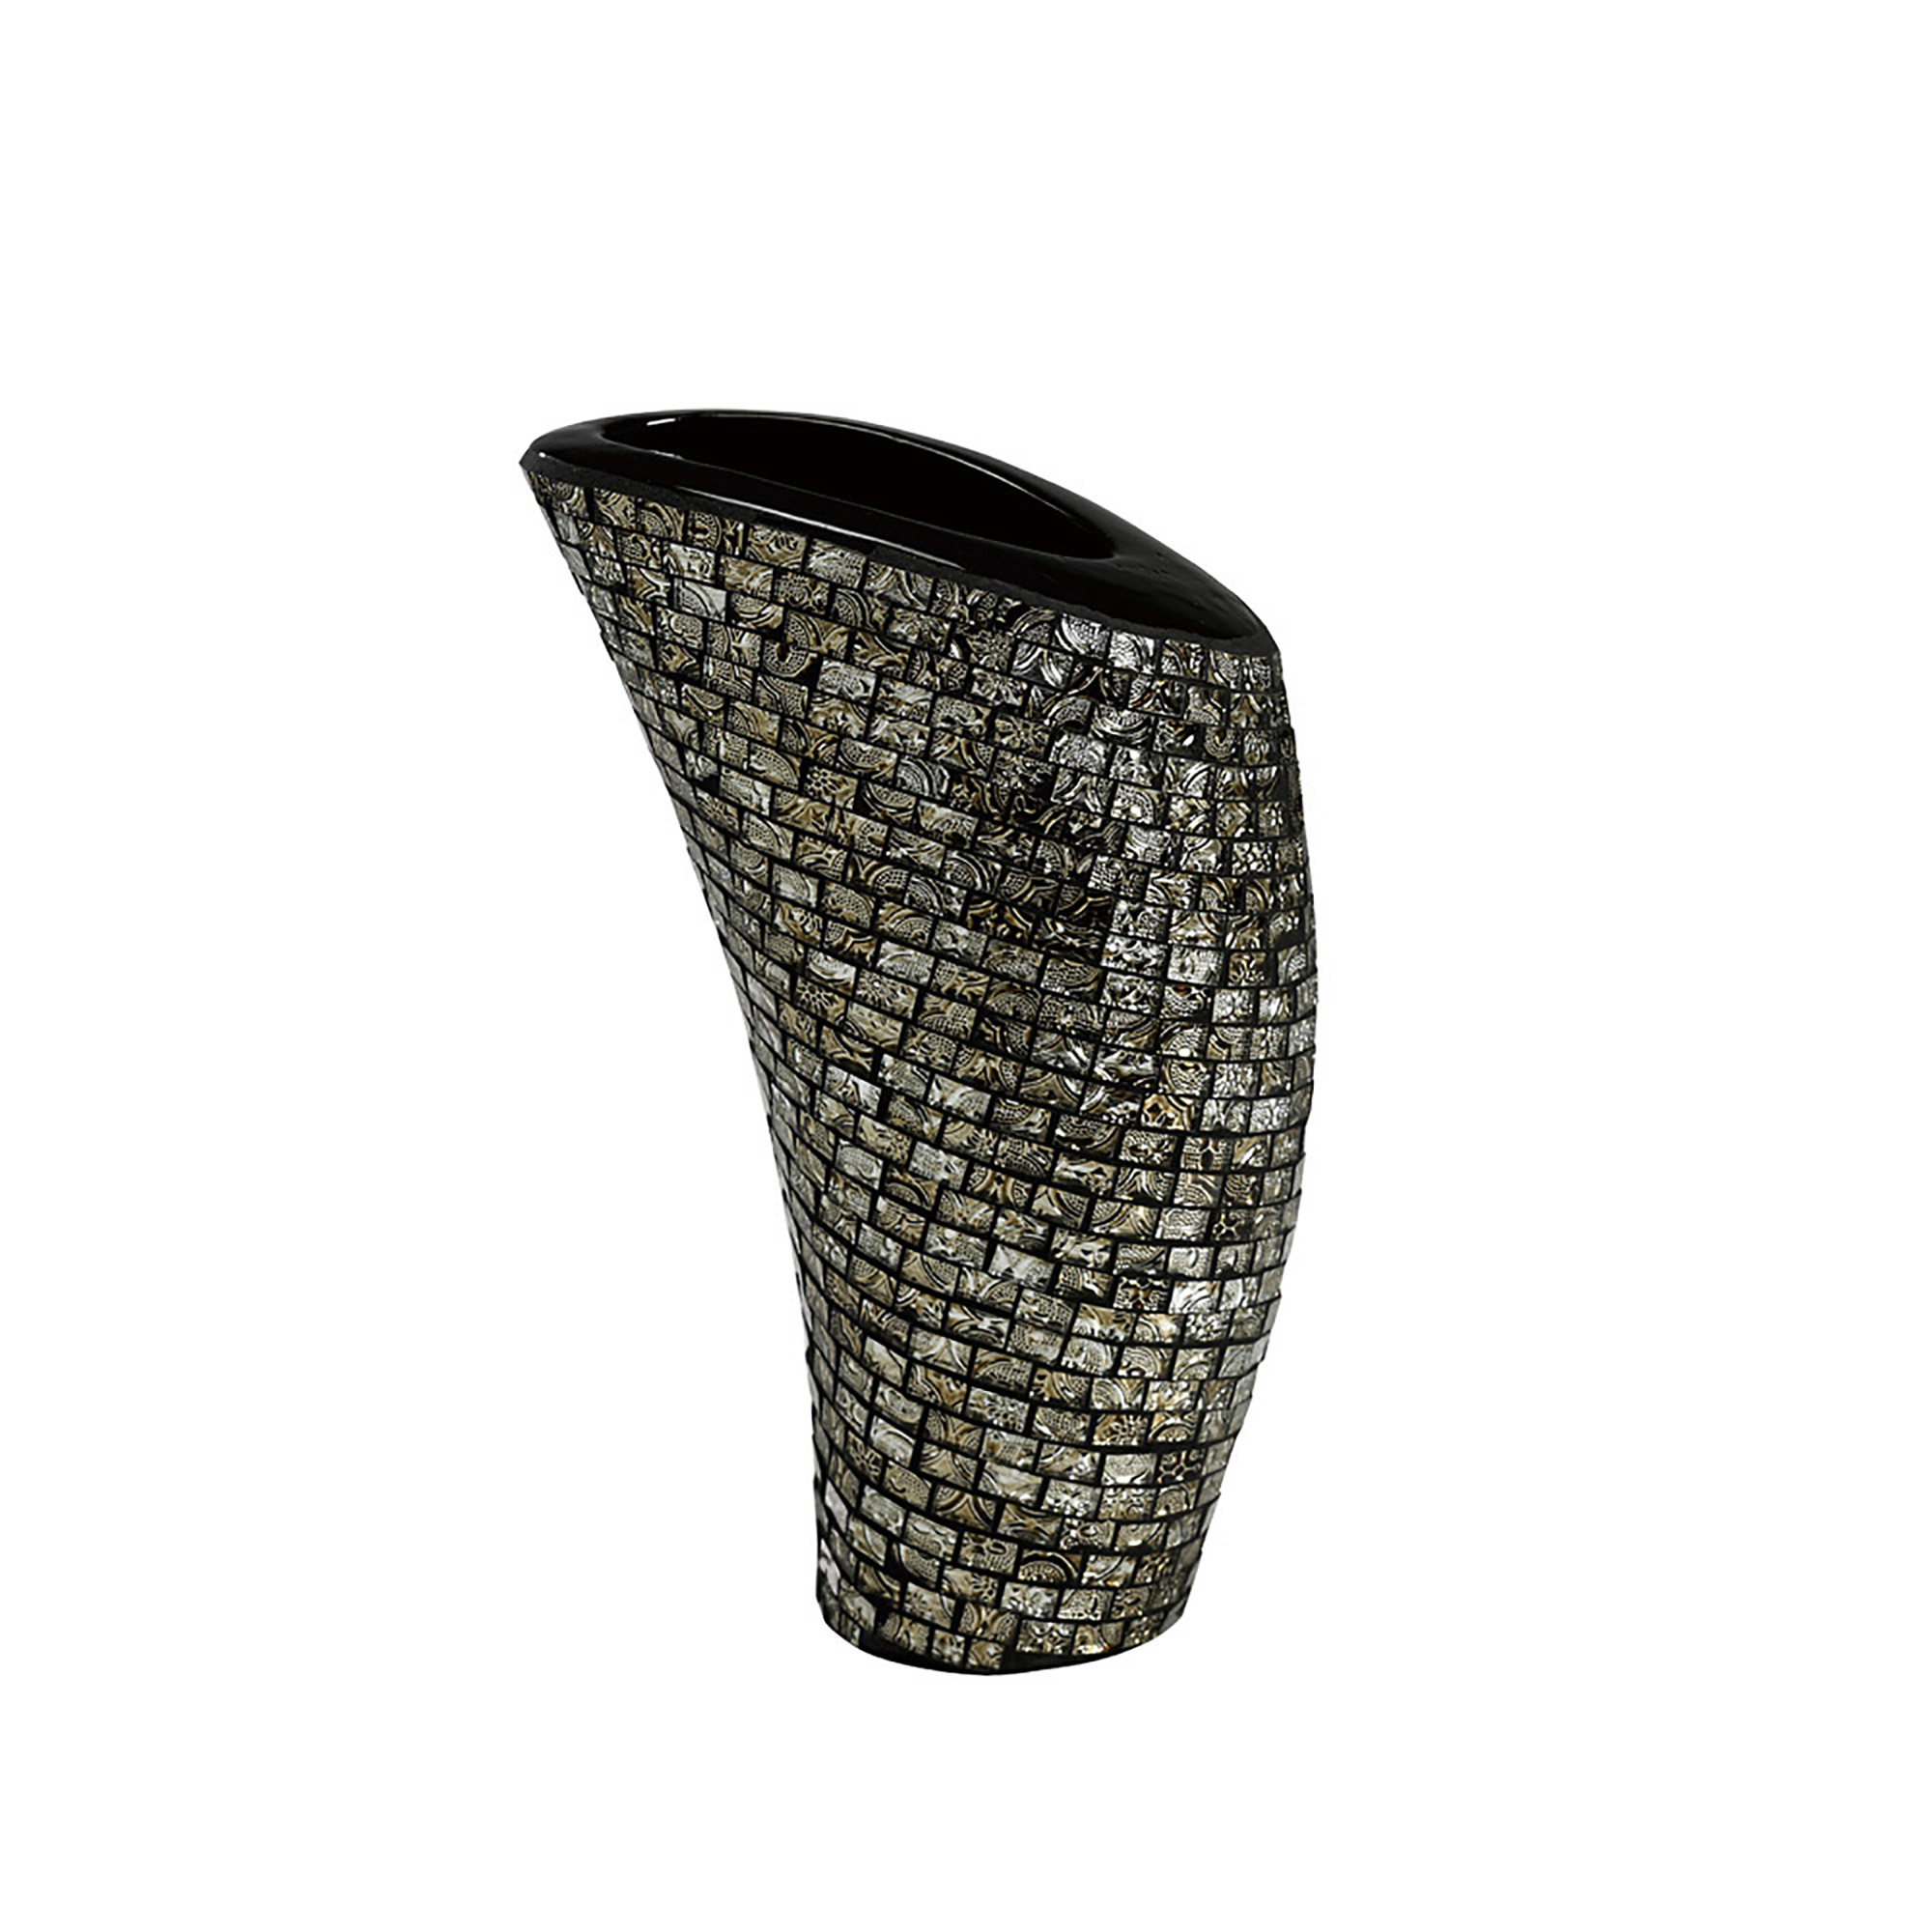 IL70233  Celeste Mosaic Vase Large Polished Chrome